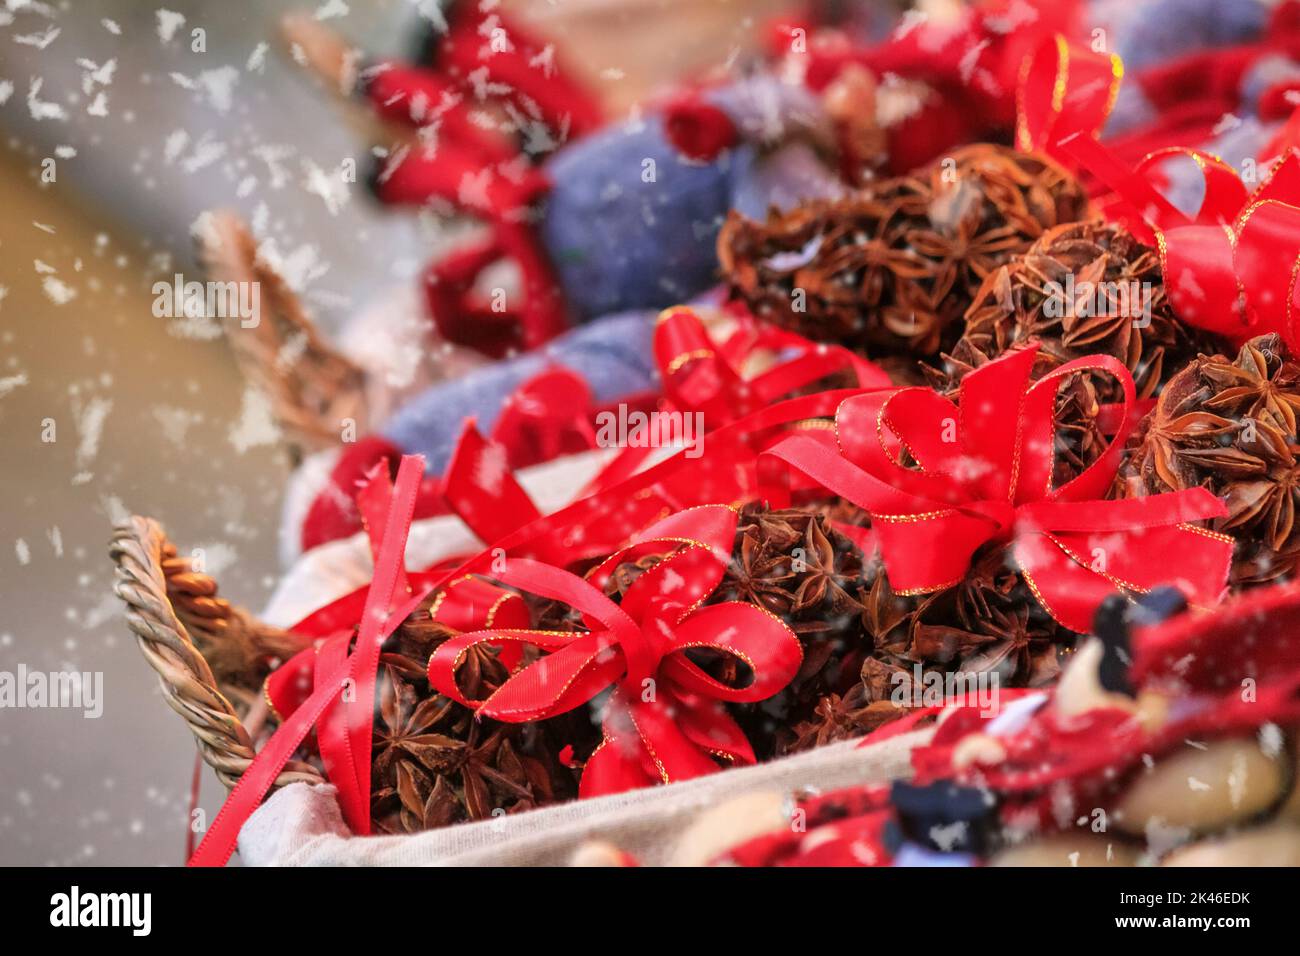 Paesaggio urbano festoso - vista del primo piano di frutta secca all'anice sul mercatino di Natale (Weihnachtsmarkt) nella città di Vienna, Austria Foto Stock